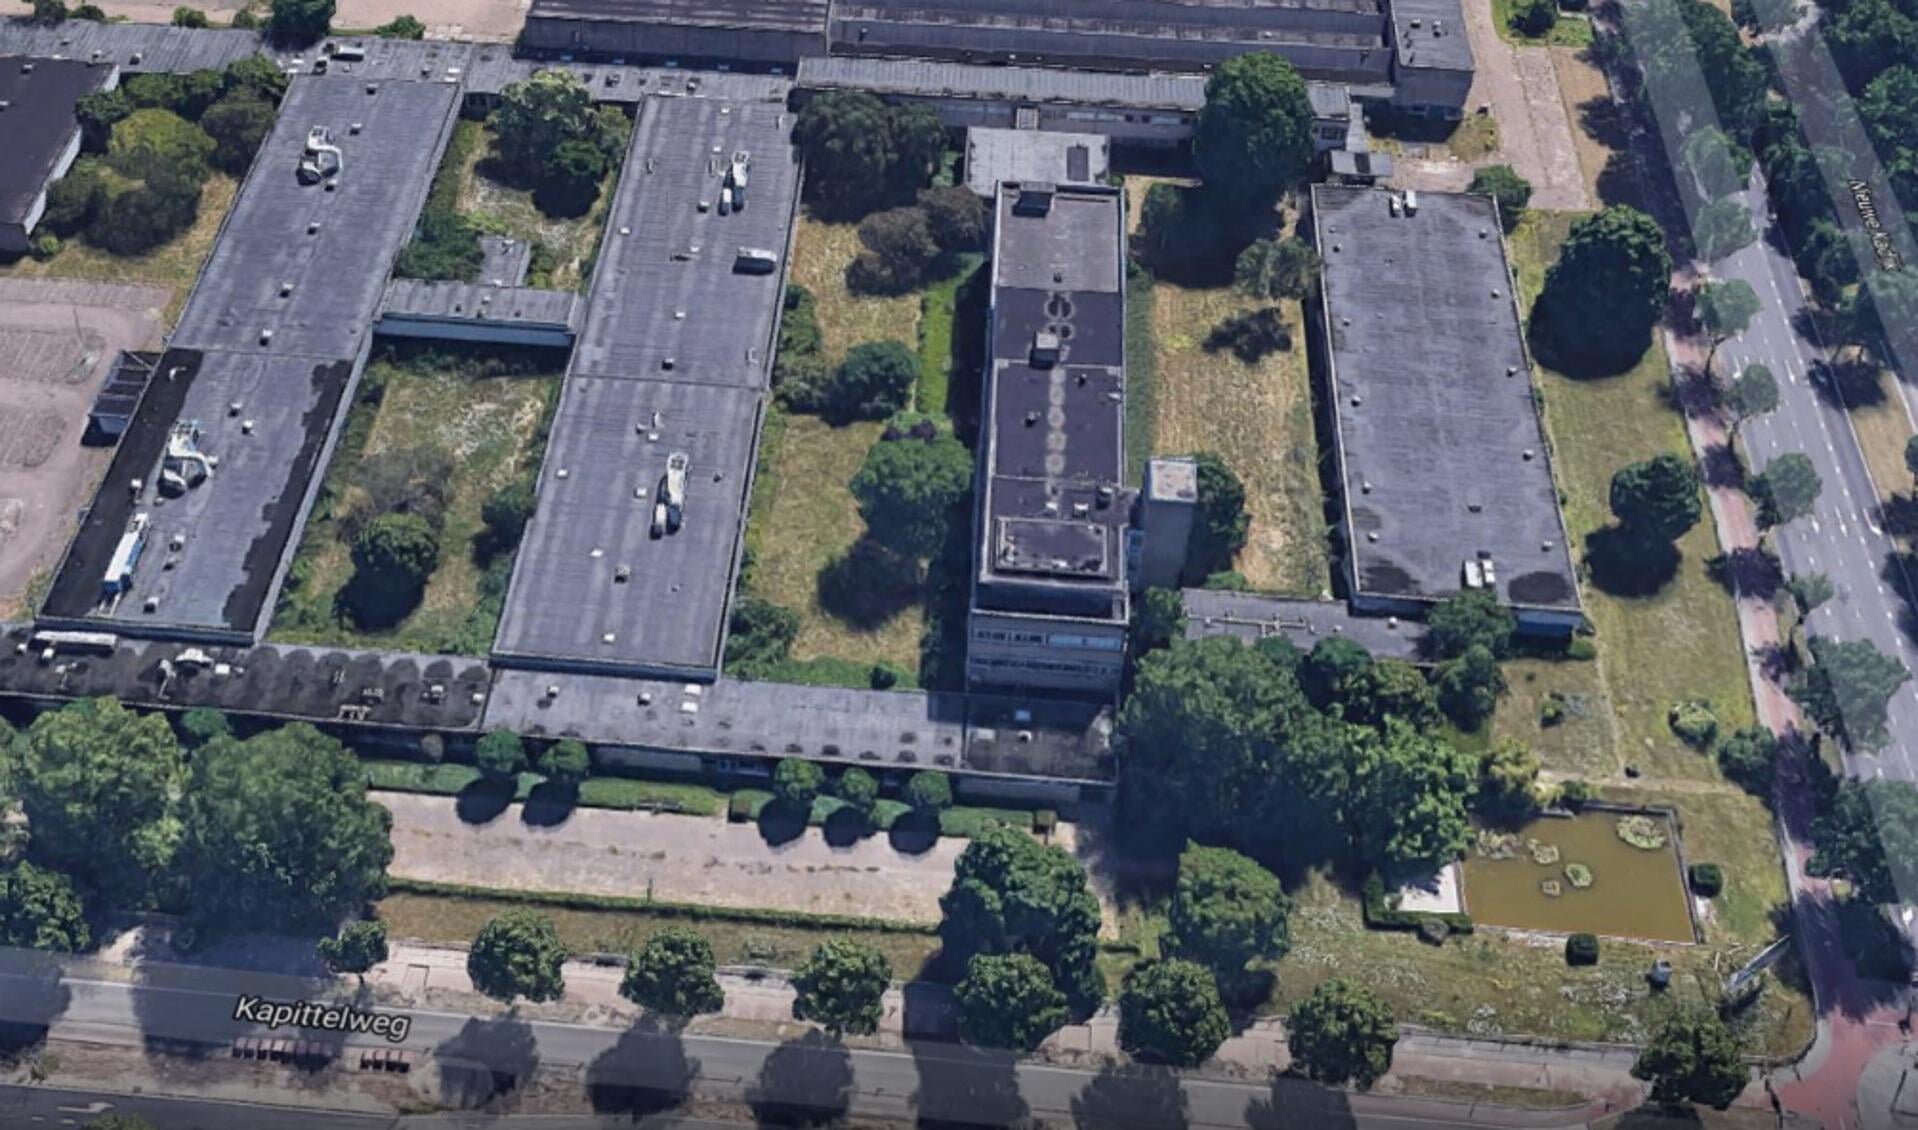 De voormalige Philips/Bosch-fabrieken aan de Kapittelweg